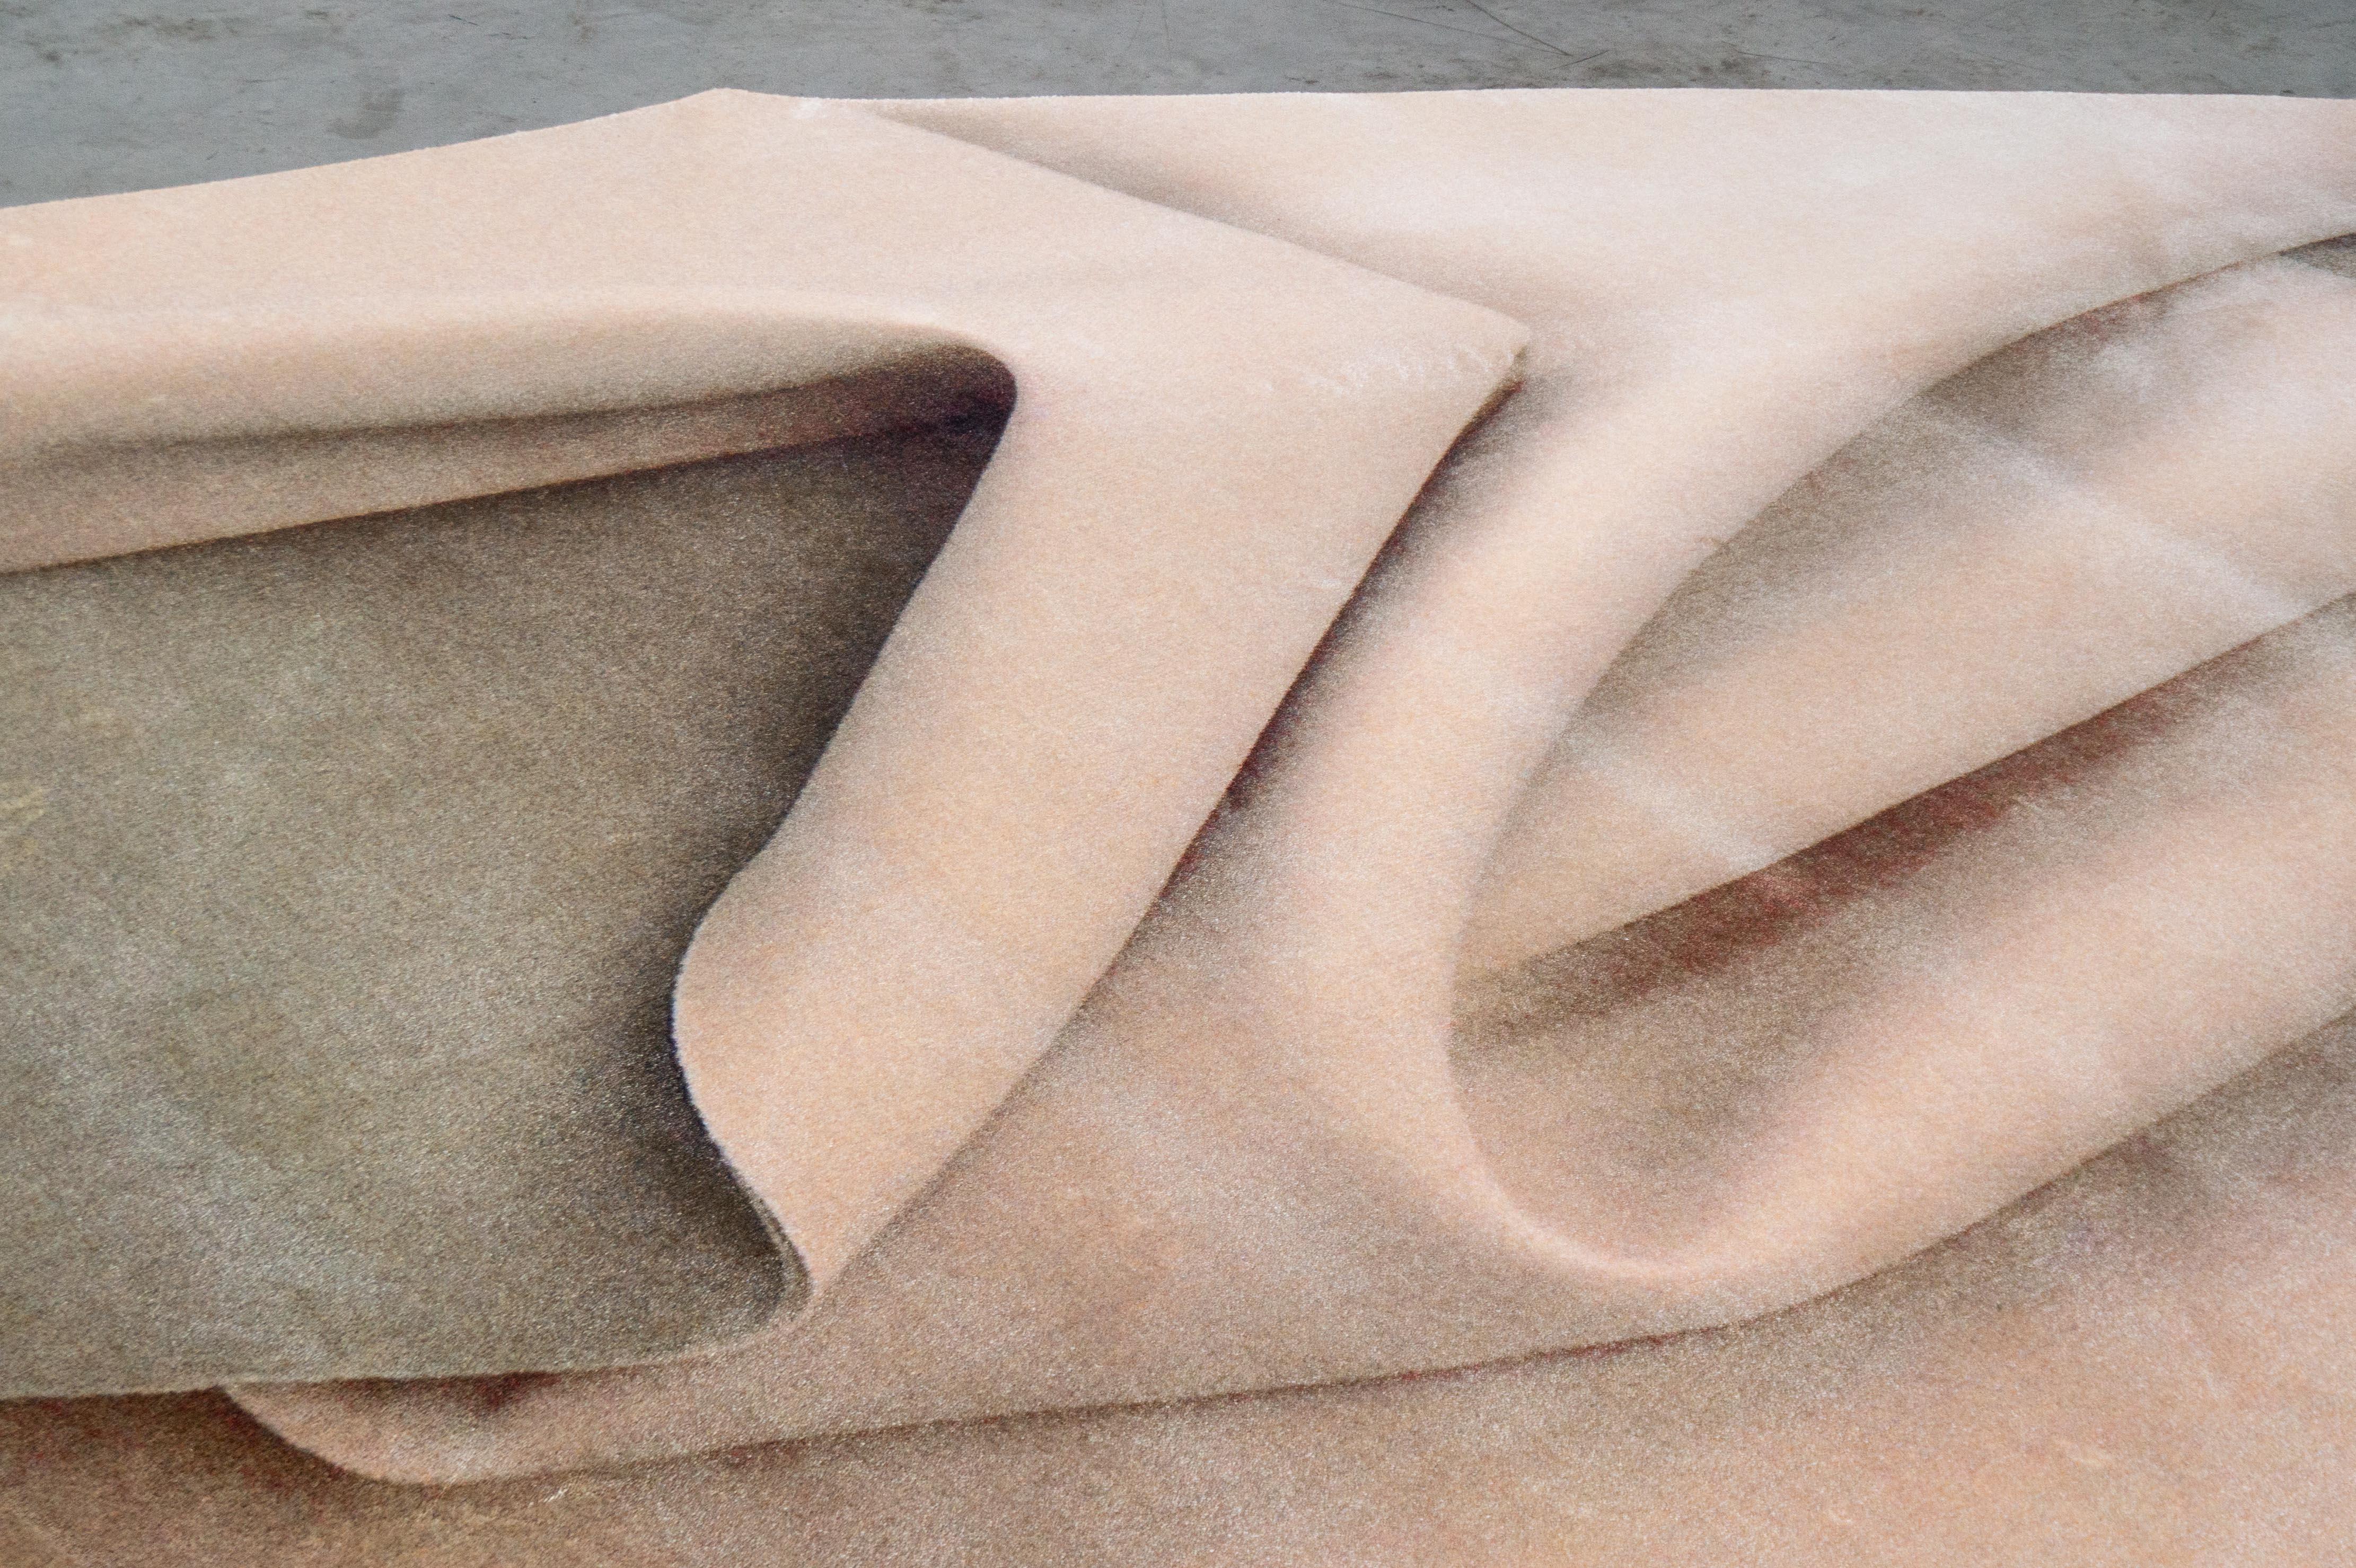 Moooi petit tapis pliant nu en laine avec finition ourlet aveugle par Celia Hadeler

Celia Hadeler est une artiste contemporaine, basée aux Pays-Bas. Son travail est fait de contradictions et de contrastes. D'origine péruvienne et allemande, Celia